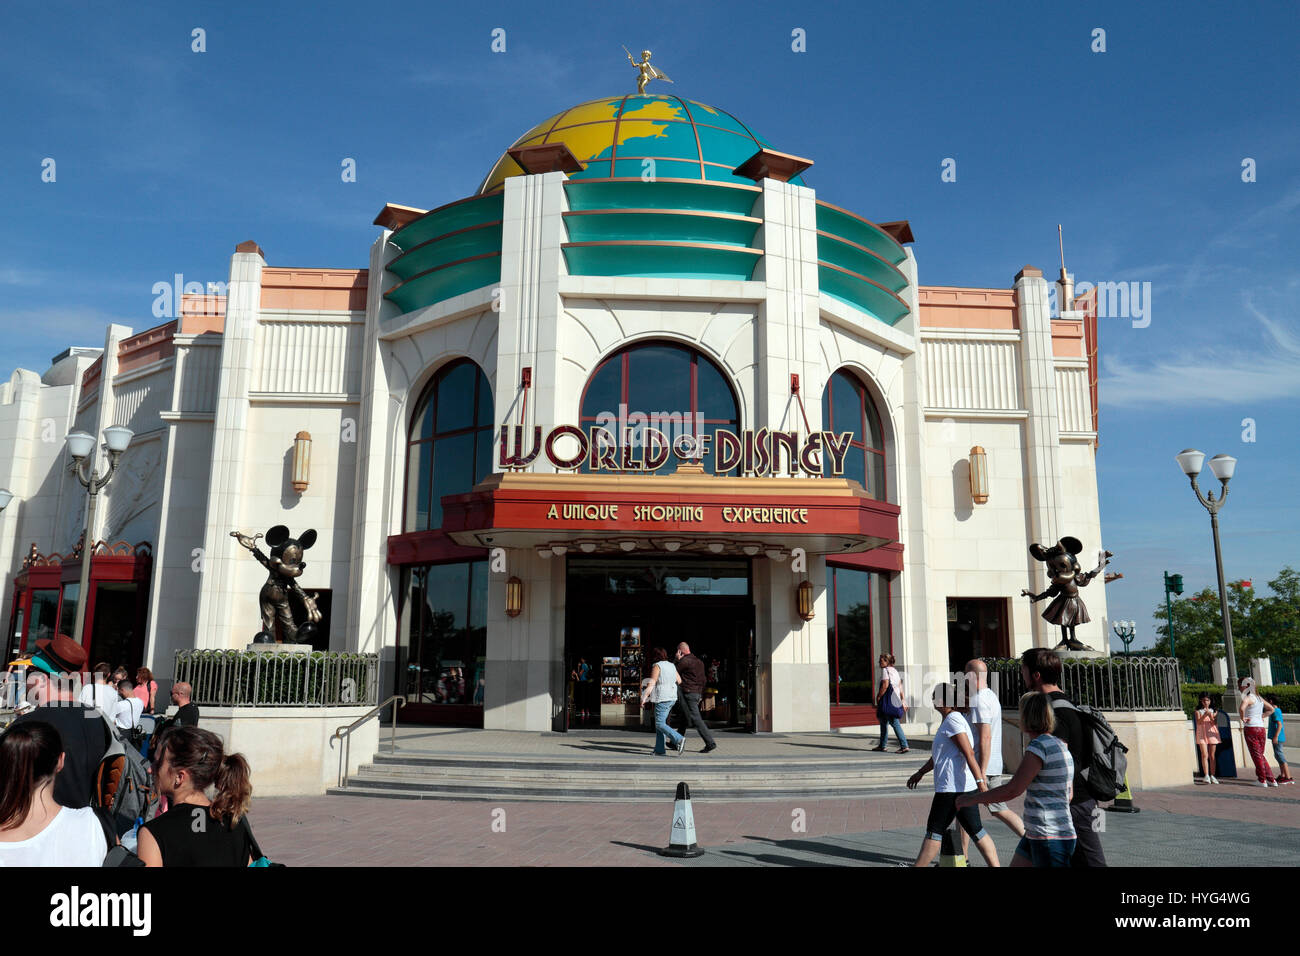 Entrée dans le monde de la boutique de cadeaux Disney, Disney Village, Disneyland Paris, Marne-la-Vallée, près de Paris, France. Banque D'Images